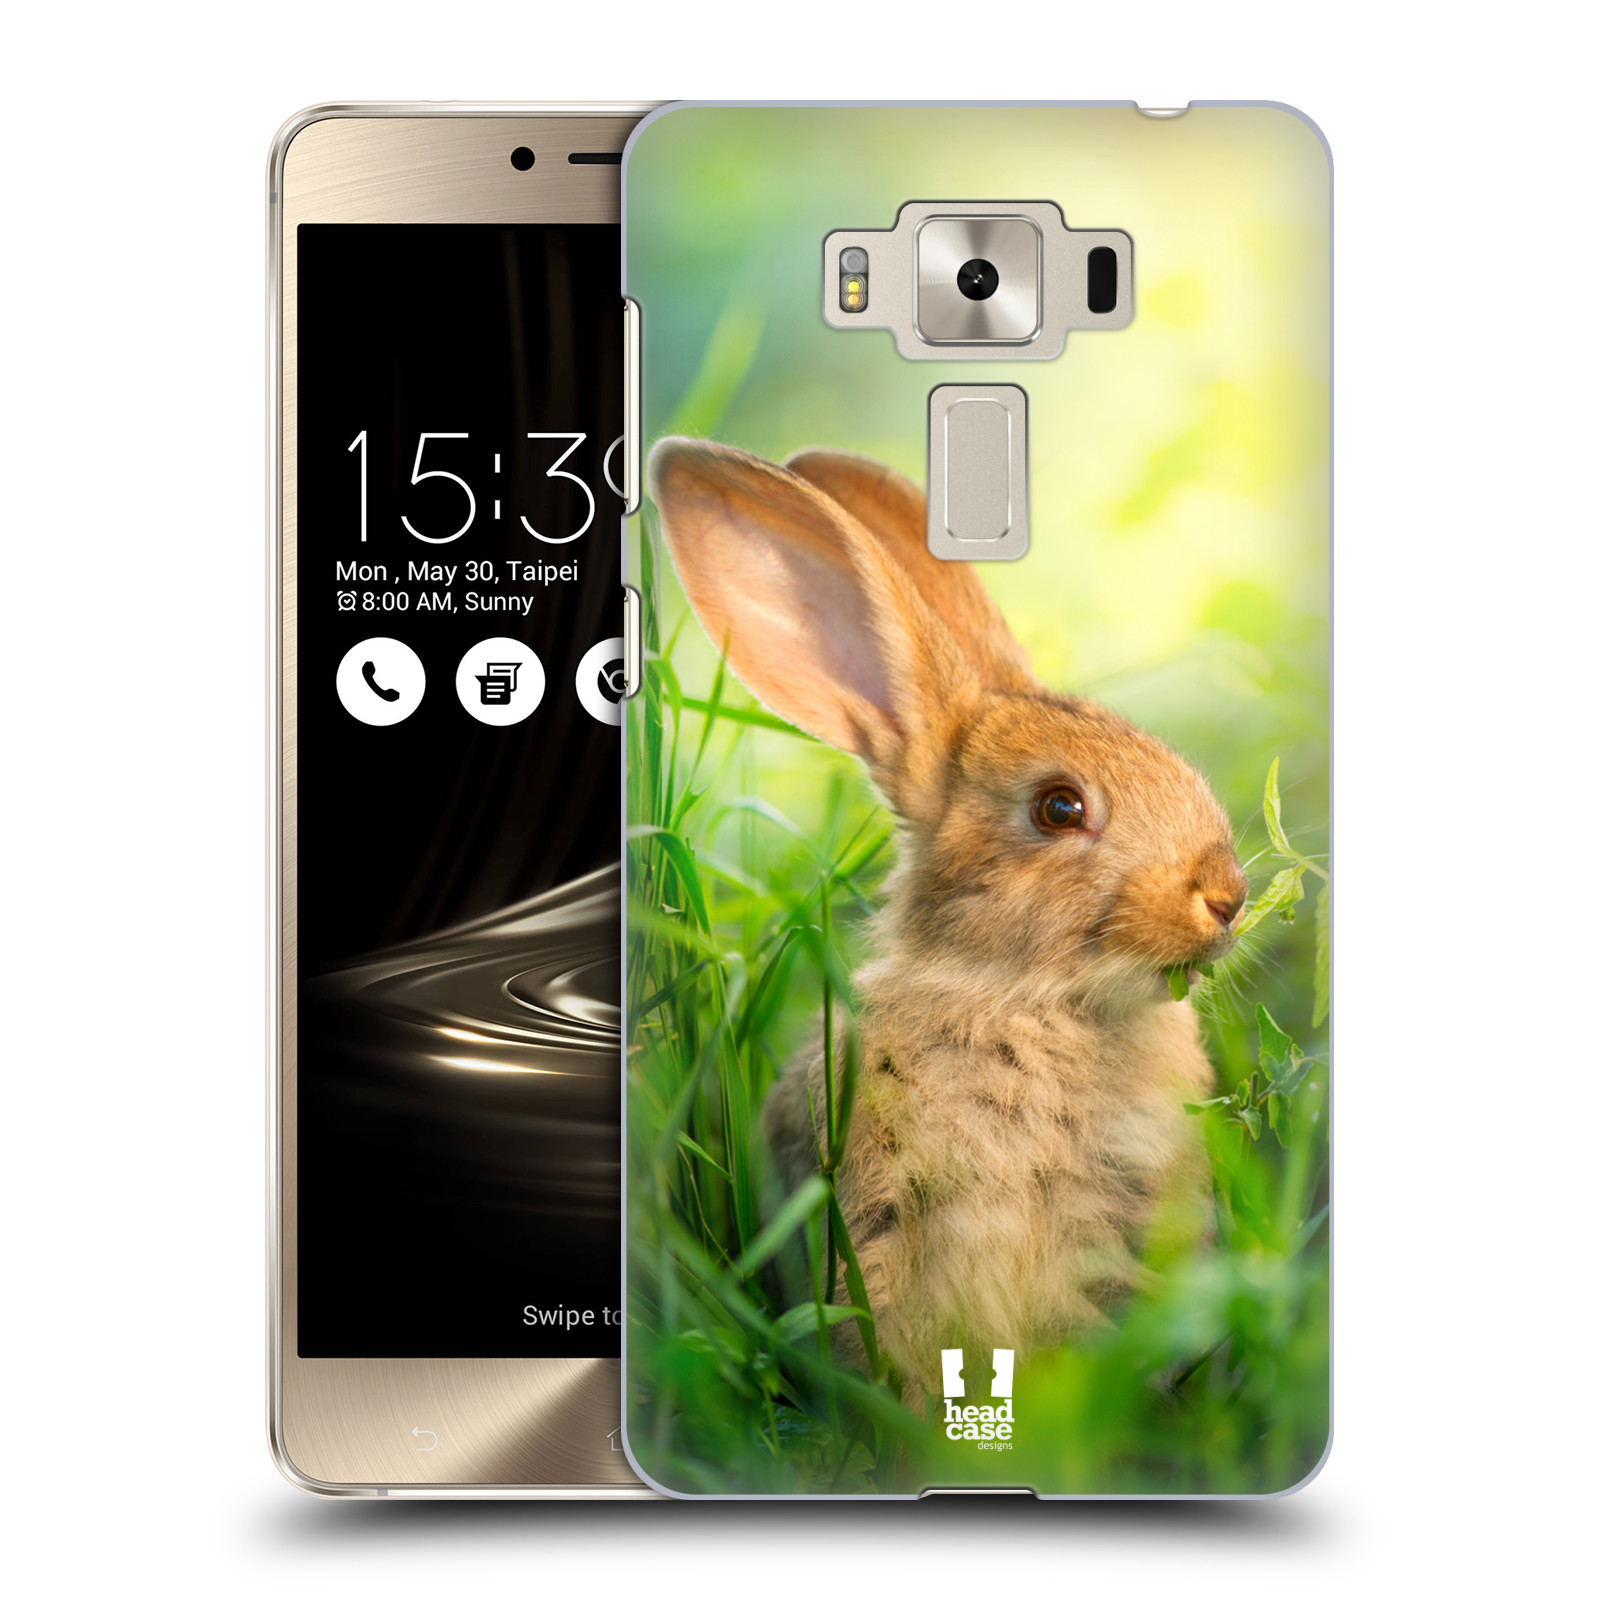 HEAD CASE plastový obal na mobil Asus Zenfone 3 DELUXE ZS550KL vzor Divočina, Divoký život a zvířata foto ZAJÍČEK V TRÁVĚ ZELENÁ